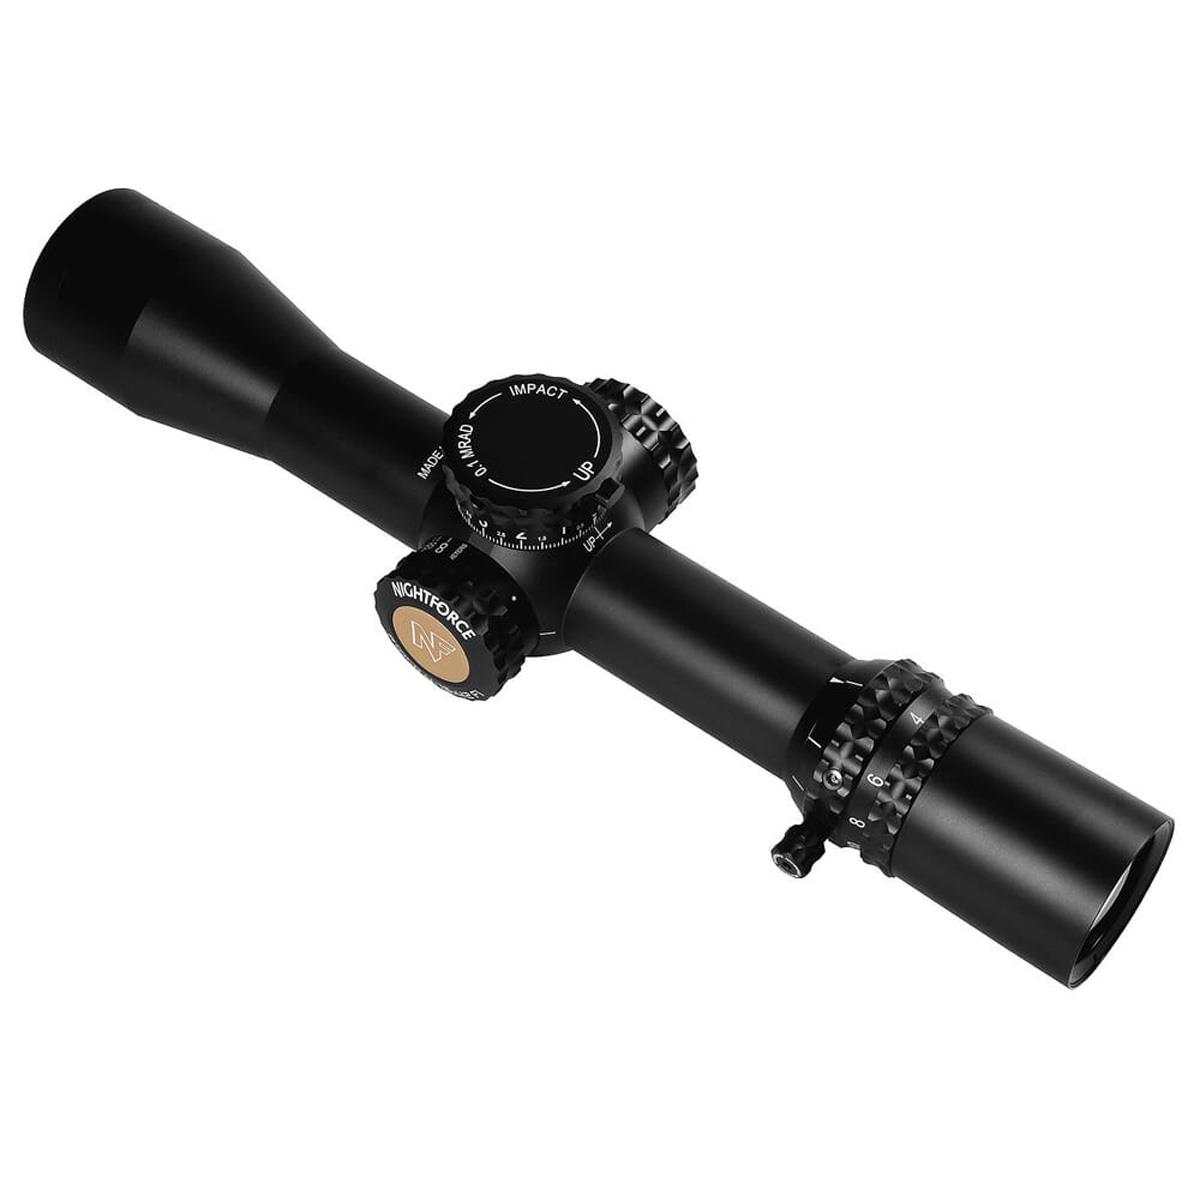 Nightforce Optics 4-16x42mm ATACR Riflescope, Illum FFP H59 Ret, Side Focus,34mm -  C573